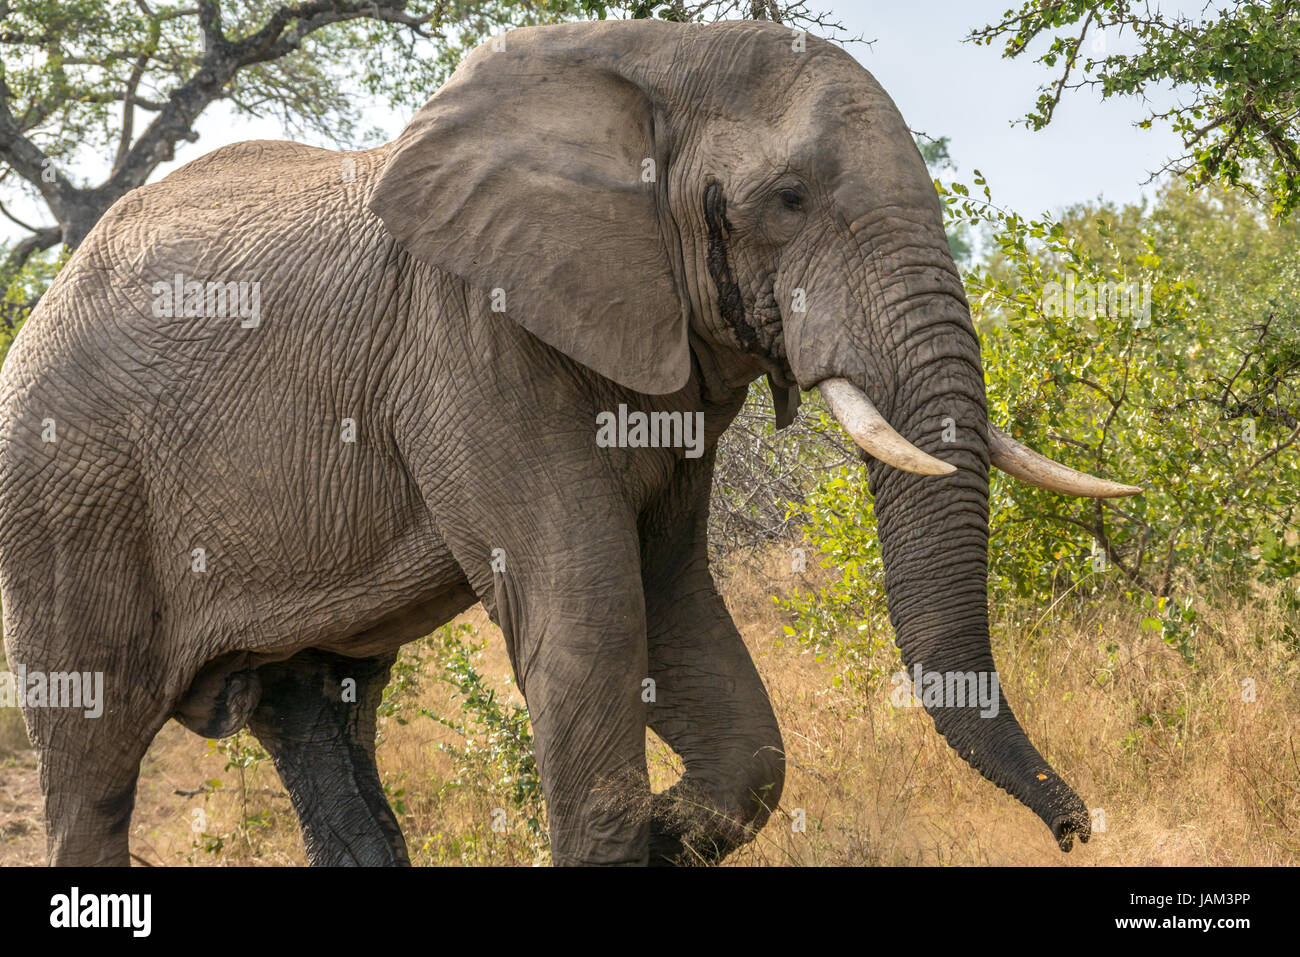 Macho de elefante africano, Loxodonta africana de Bull, en debe con la secreción de las glándulas, Sabi Sands Game Reserve, el mayor parque nacional de Kruger, Sudáfrica Foto de stock